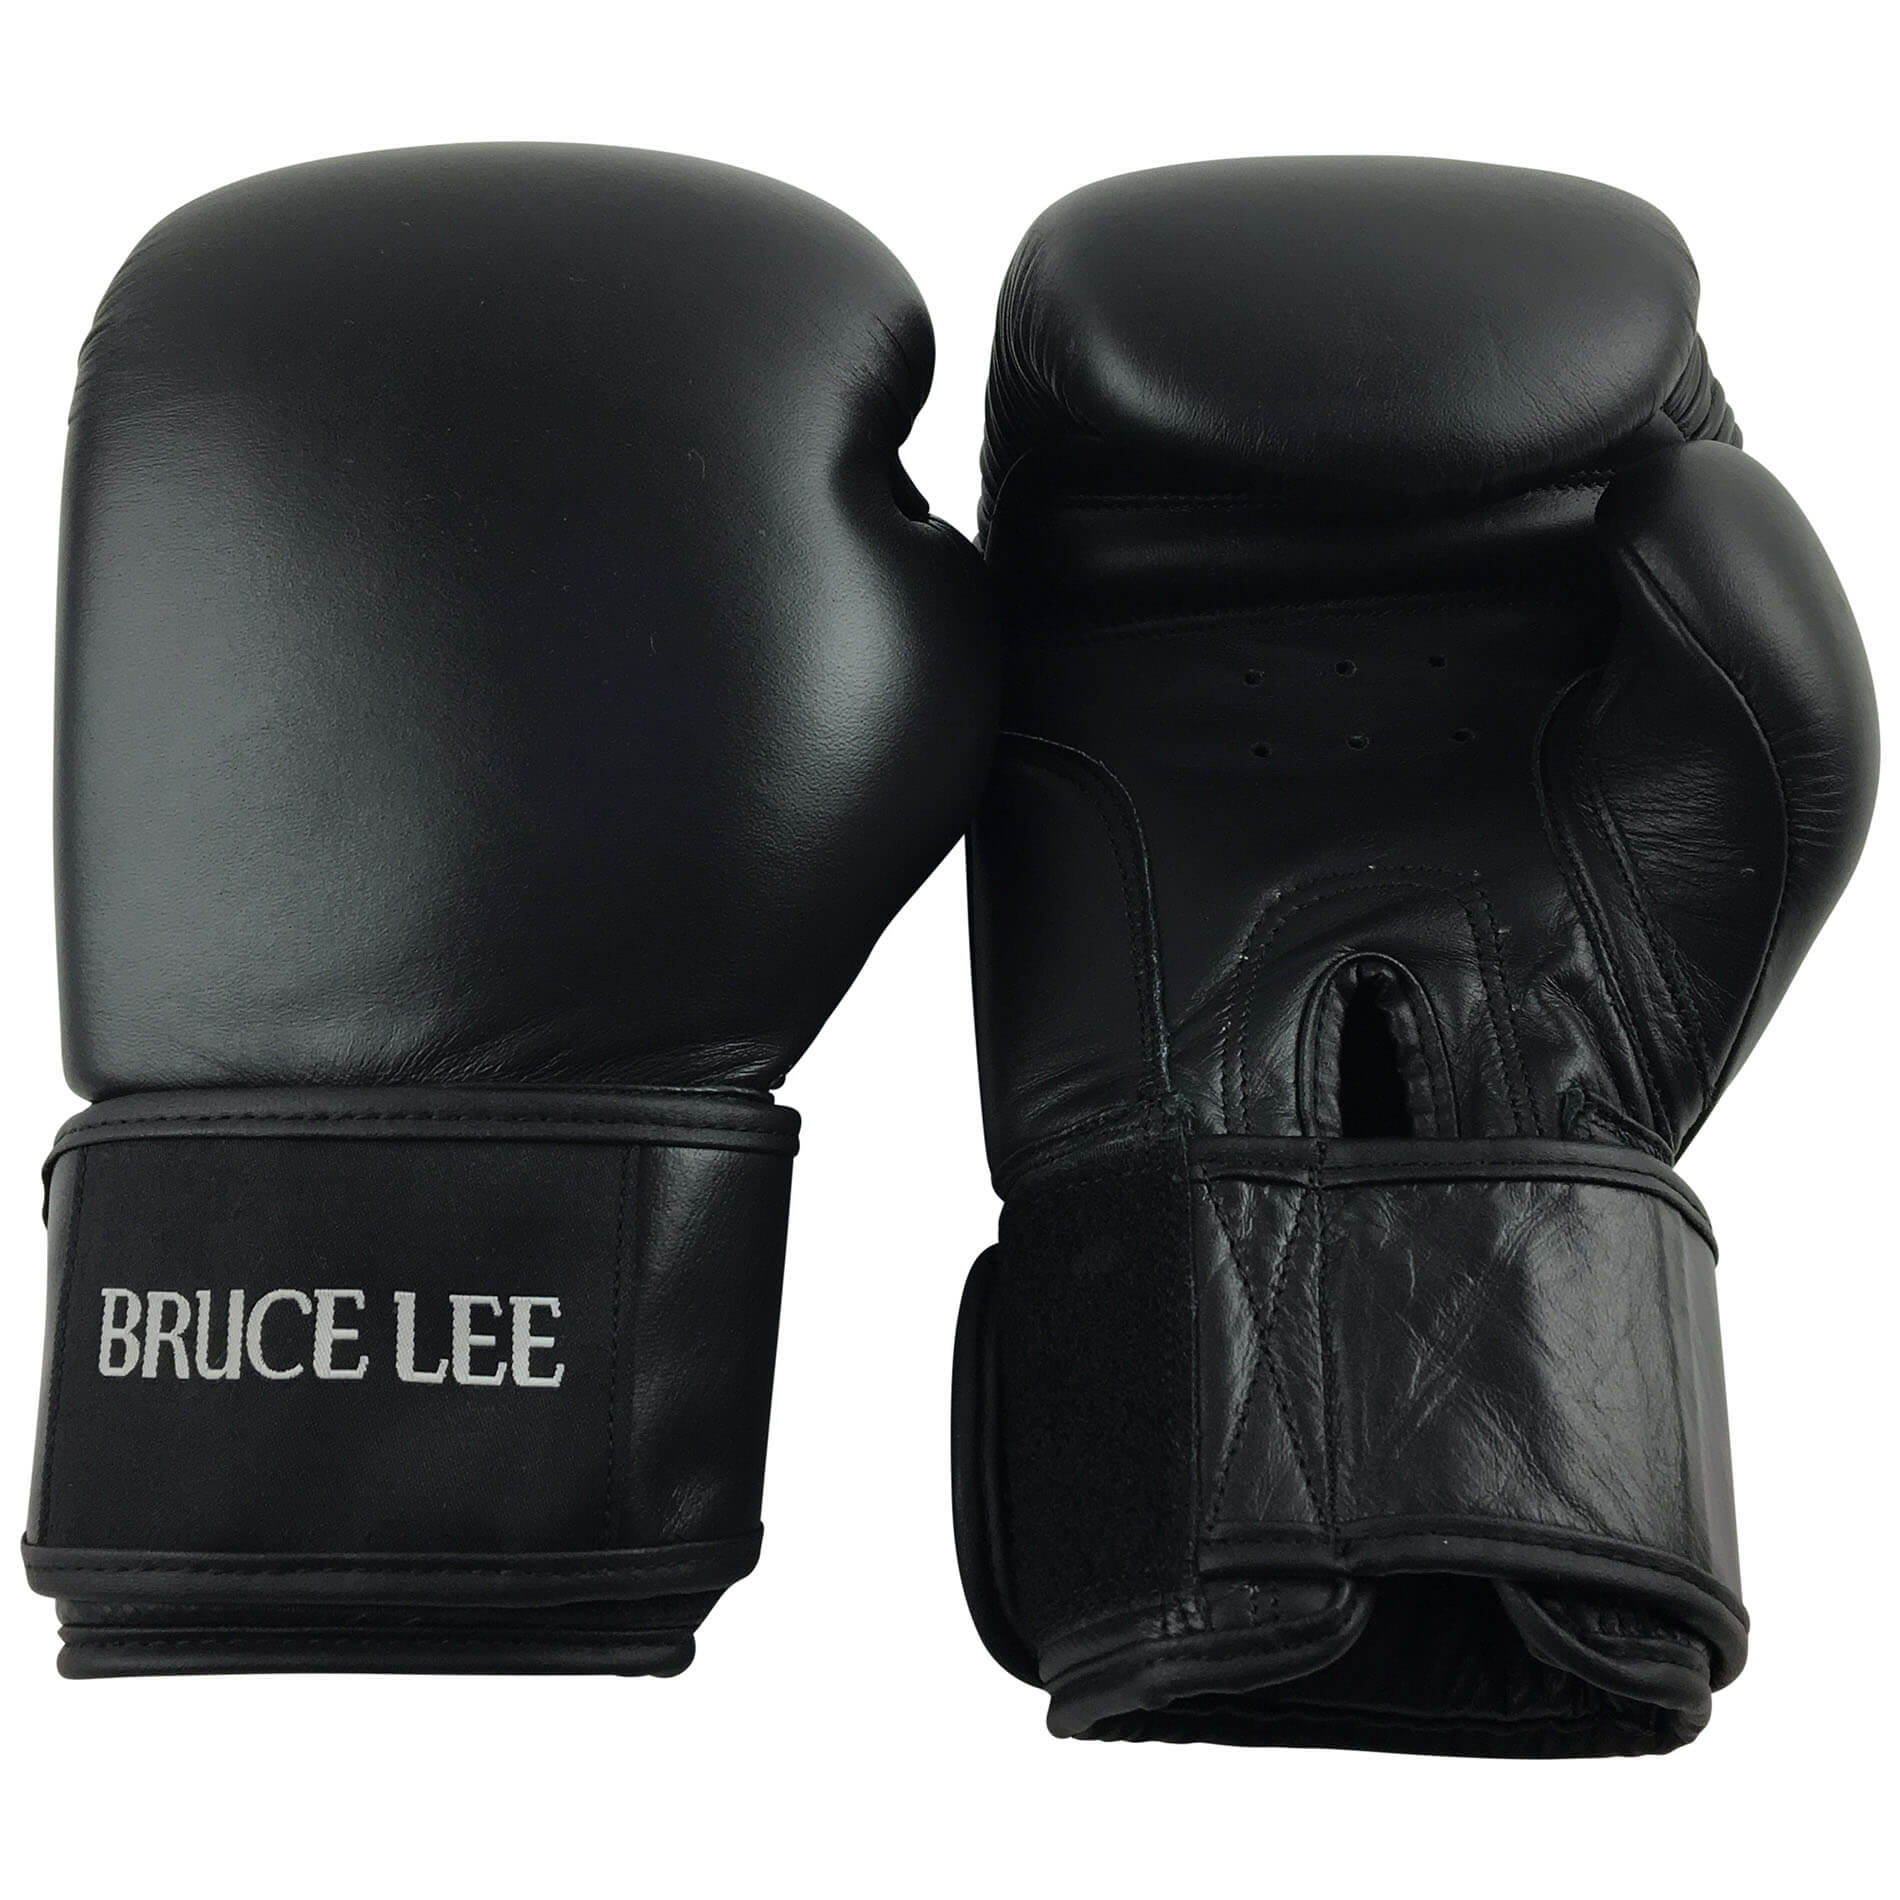 Boxerské rukavice BRUCE LEE Allround PRO vel. 10 oz